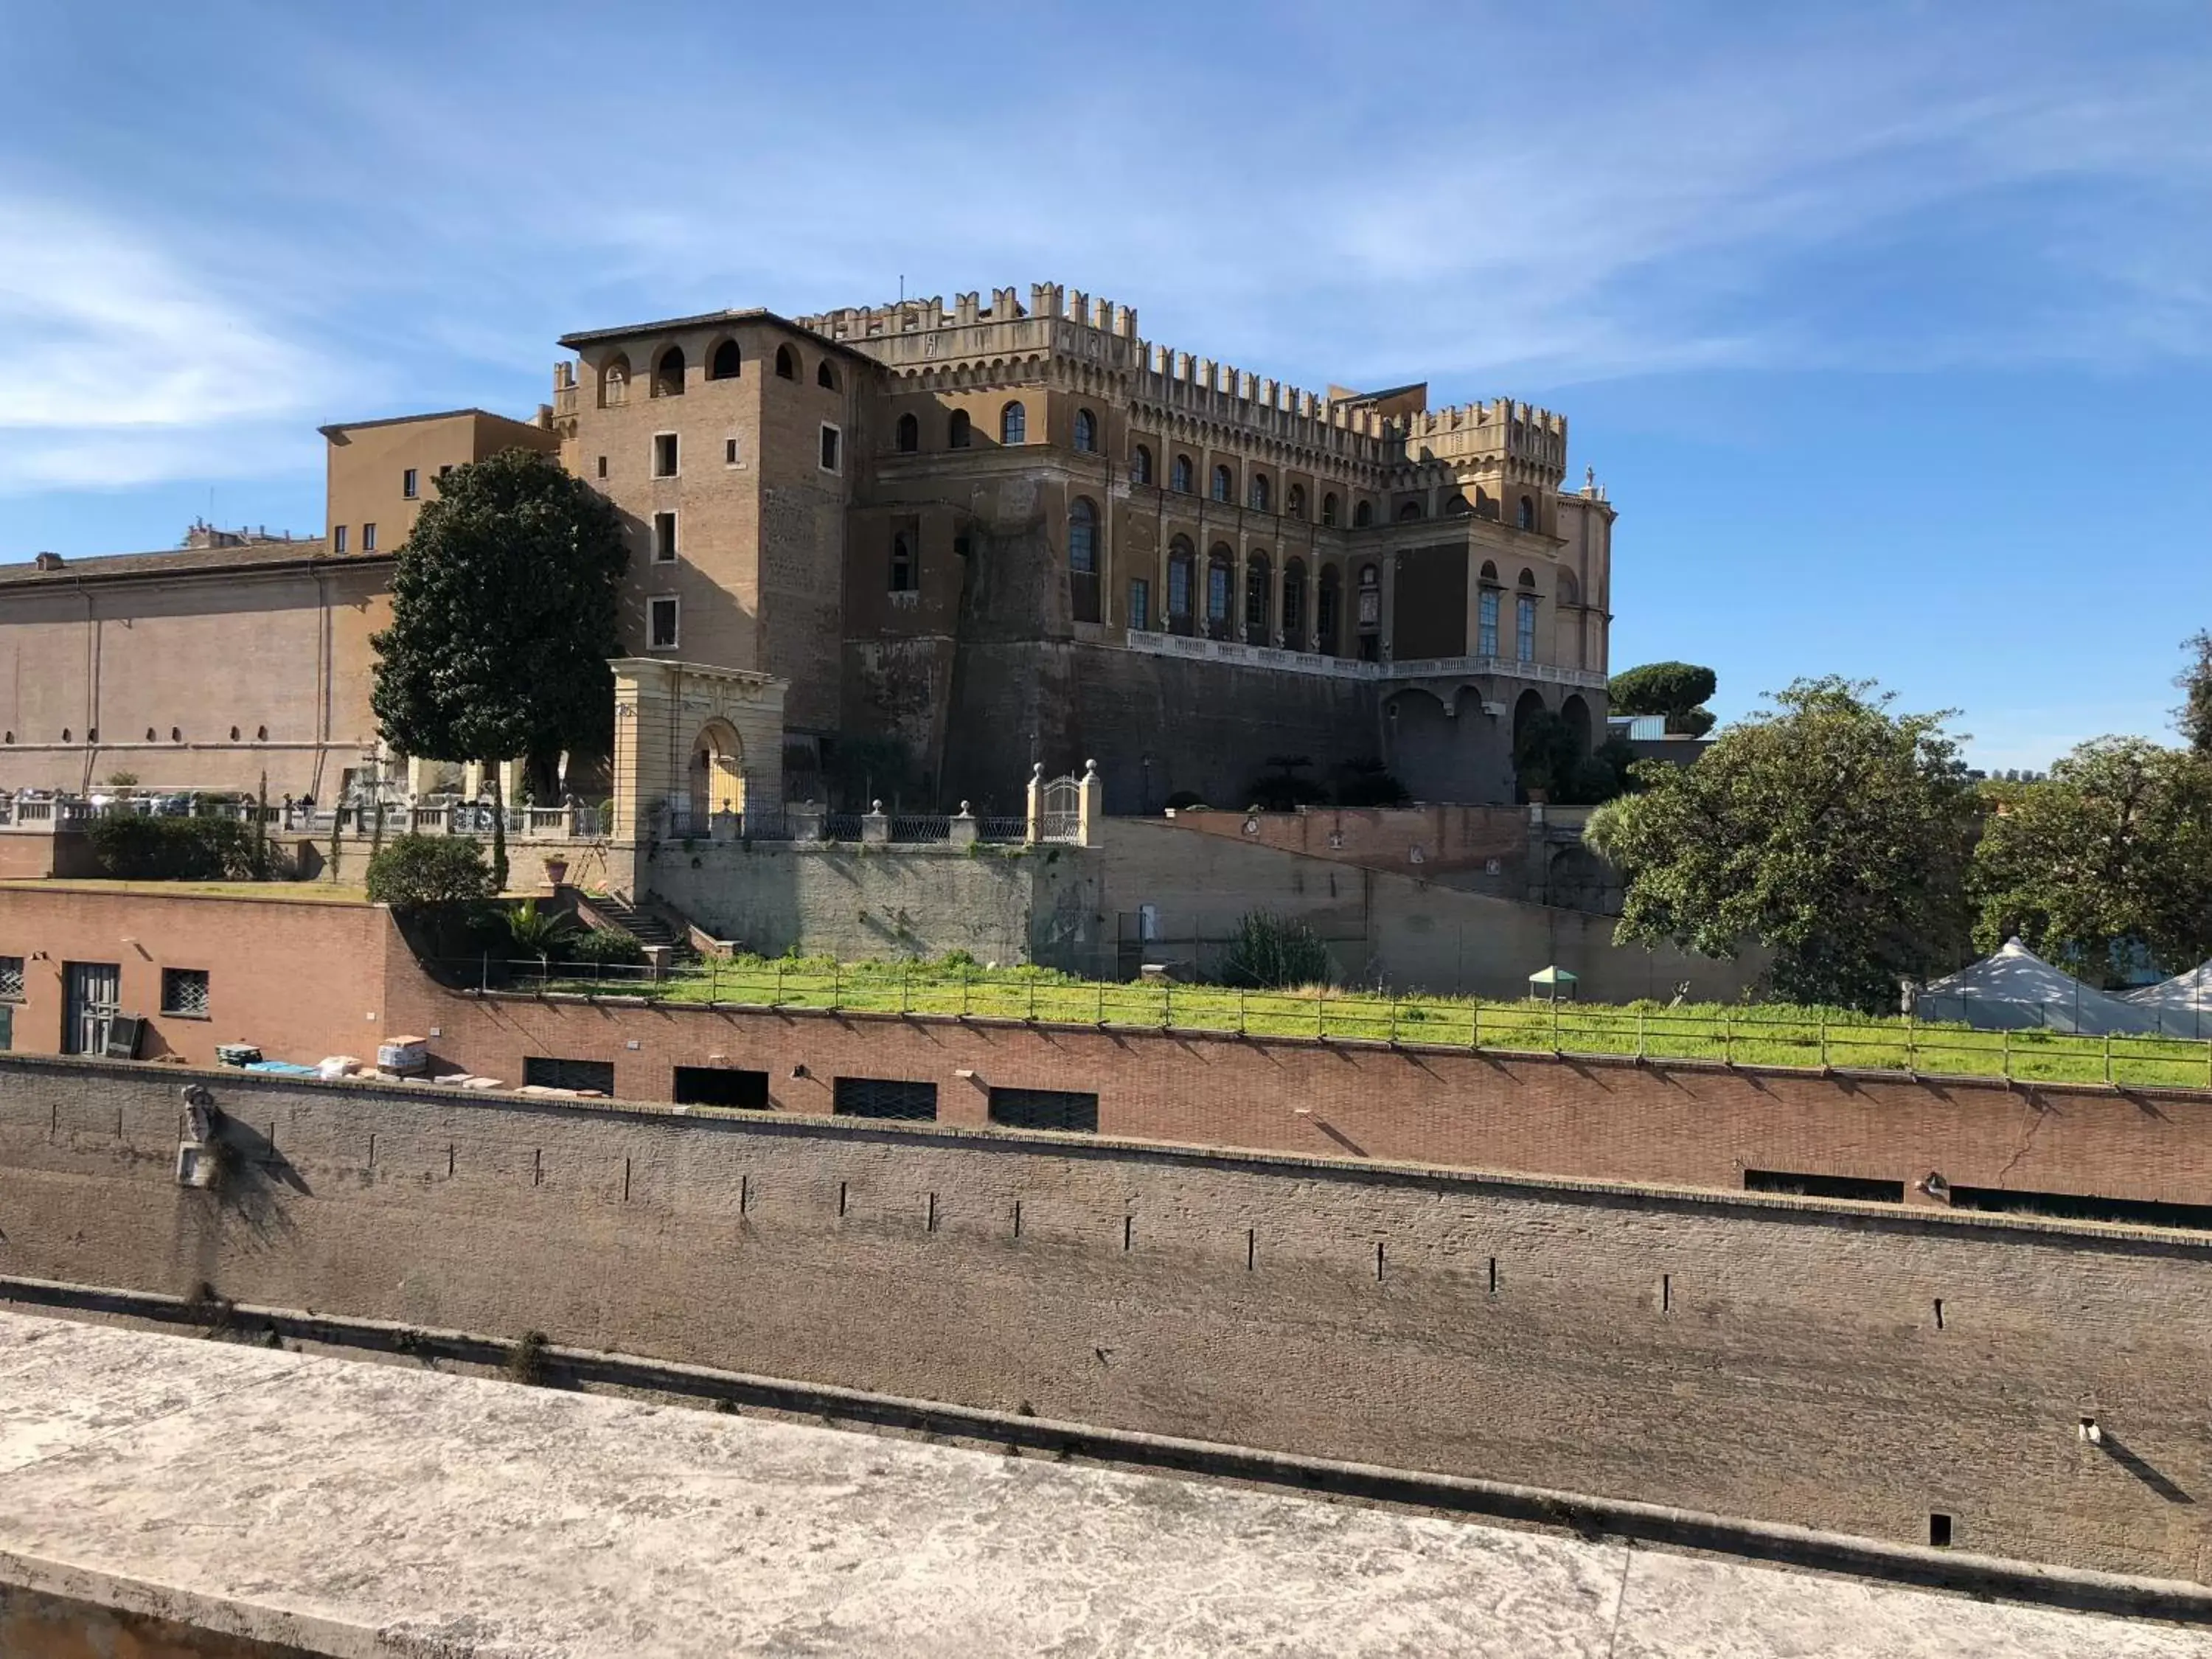 Property Building in Museum Inn - Una finestra sui Musei Vaticani